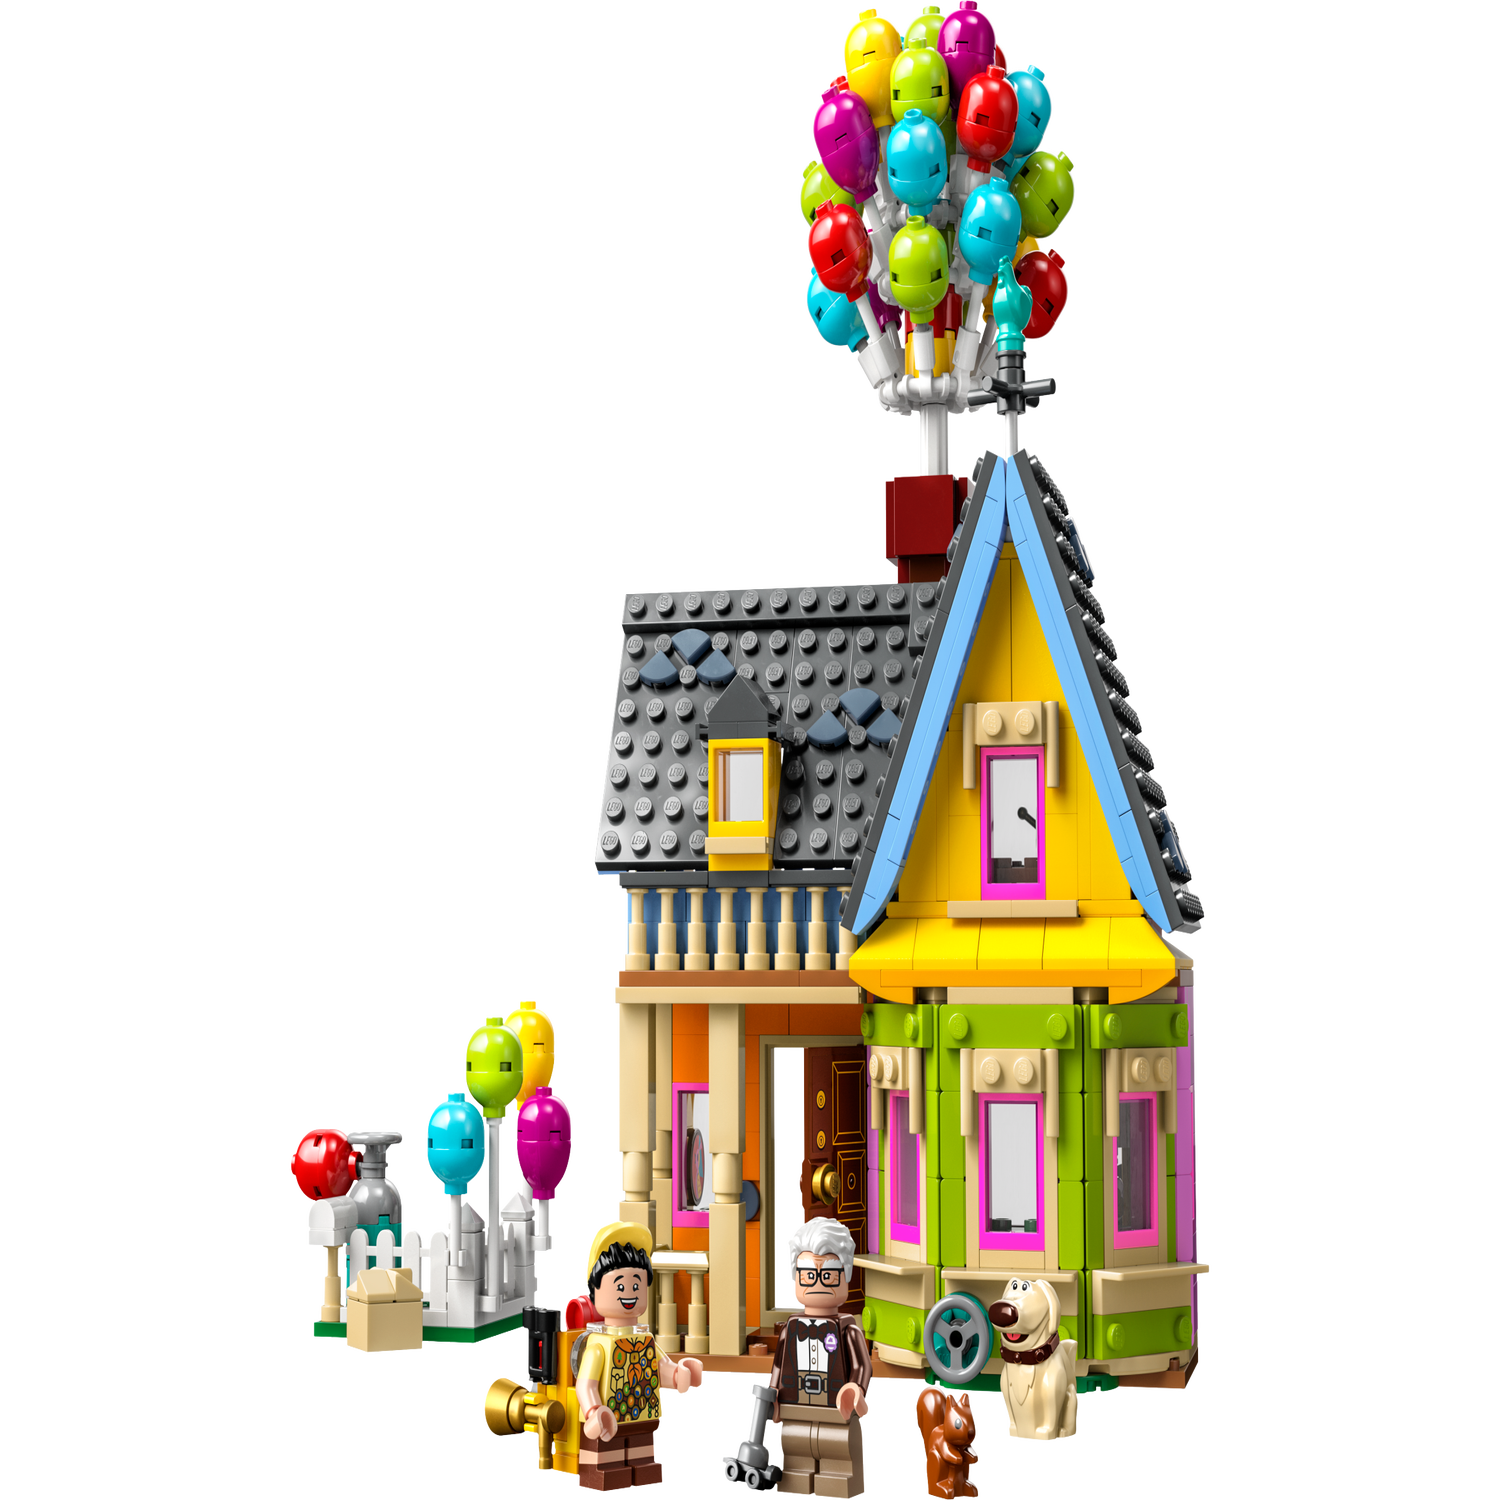 Lego Disney 43217 Casa di Up, Confronta prezzi